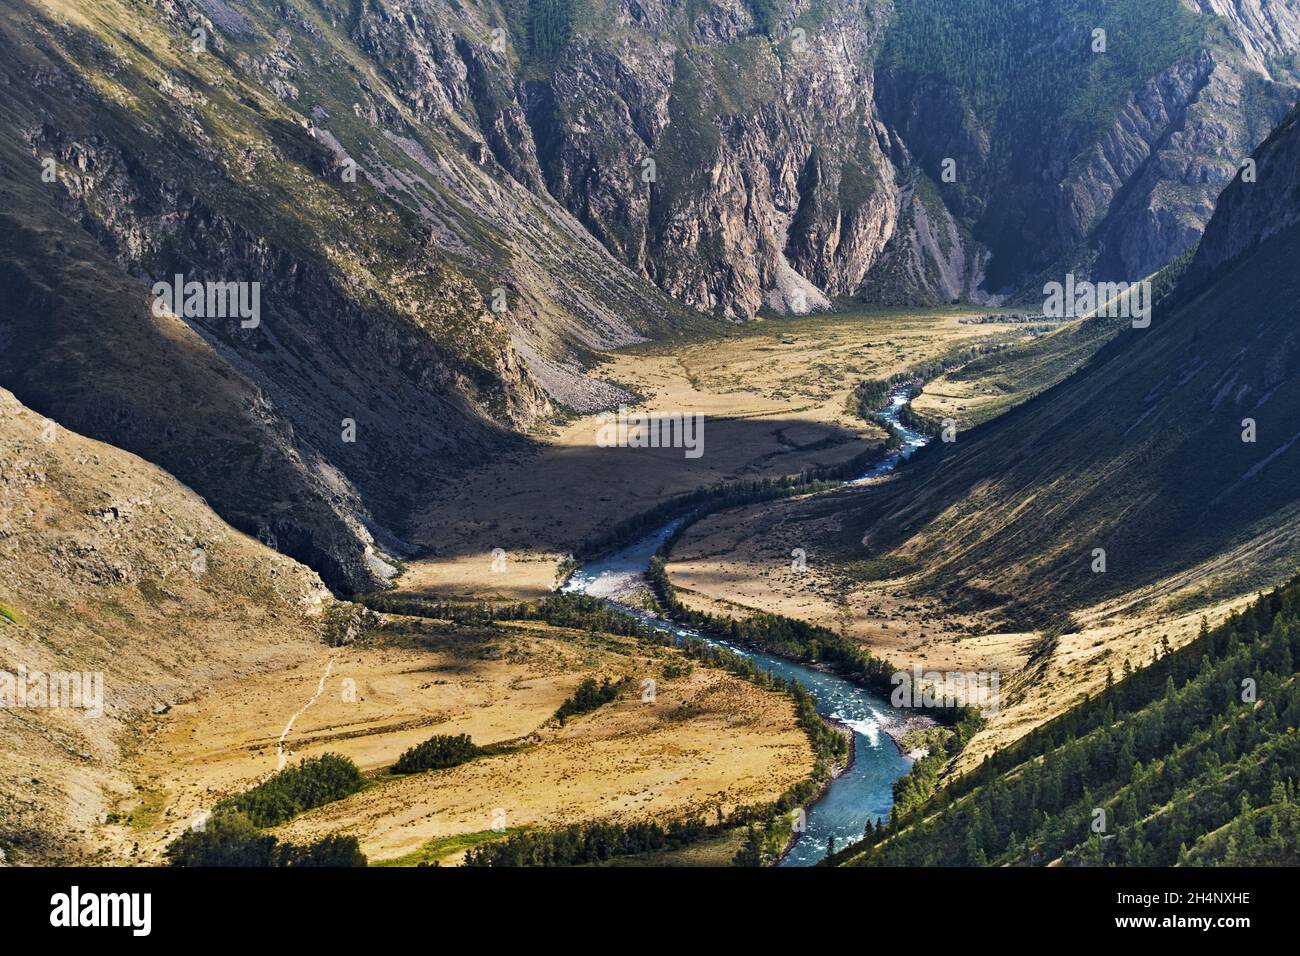 Cañón del río Chulyshman, vista desde el paso de Katu Yaryk en las montañas de Altai, Siberia, Rusia Foto de stock